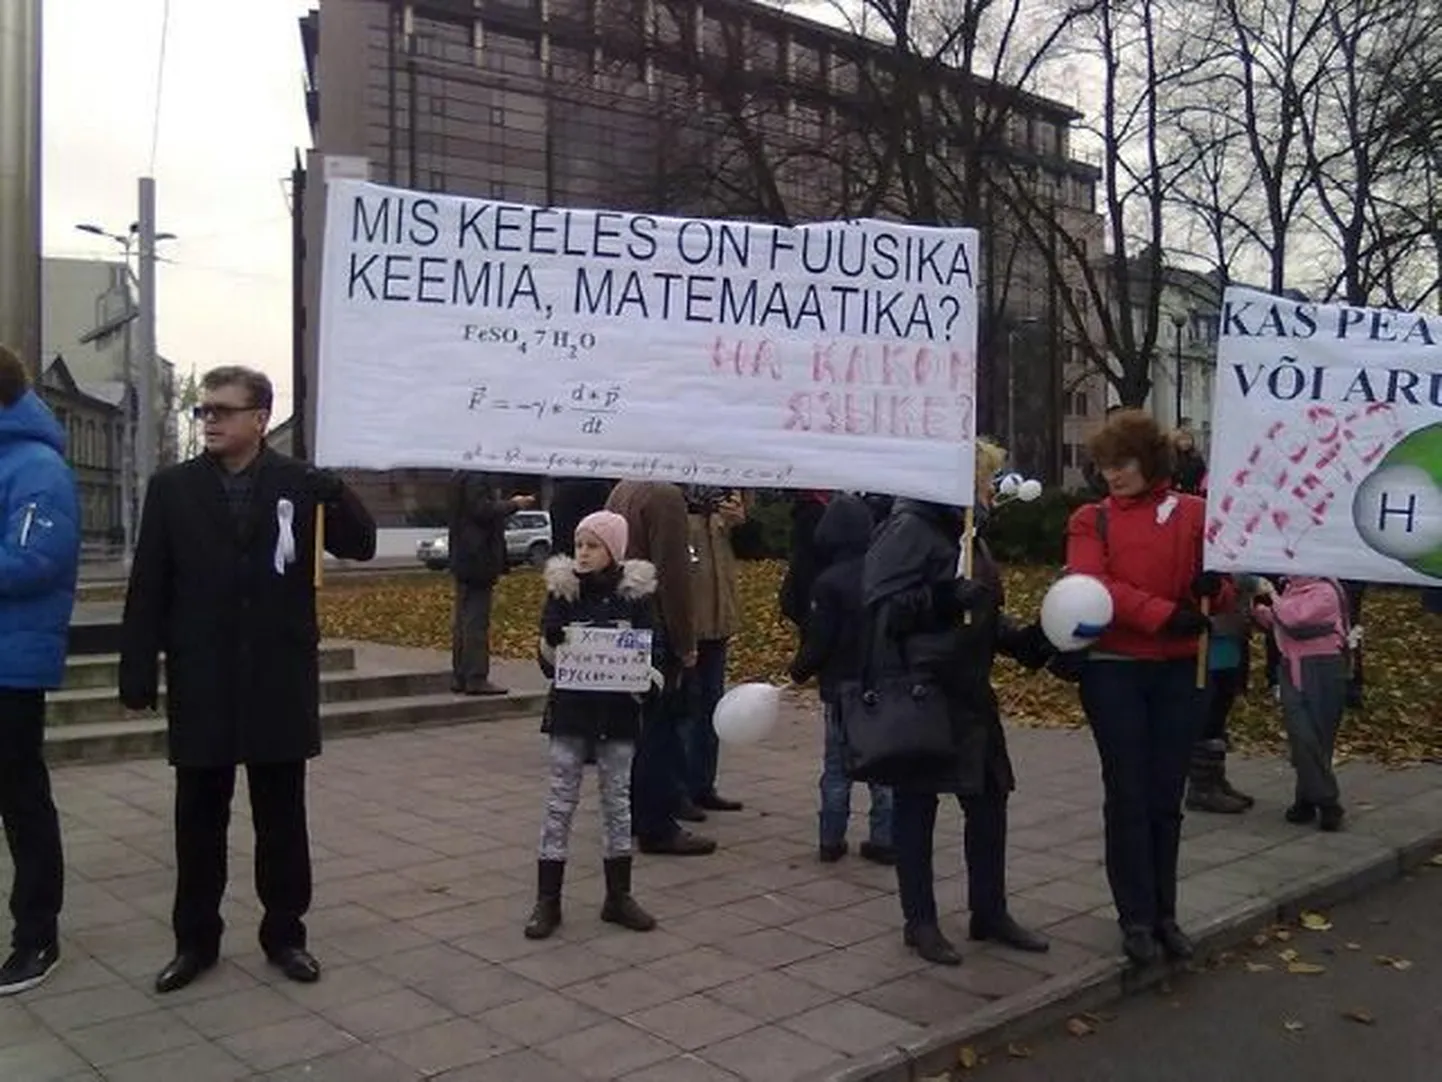 Маленькая девочка пришла на акцию с плакатиком "Хочу учиться на русском языке"